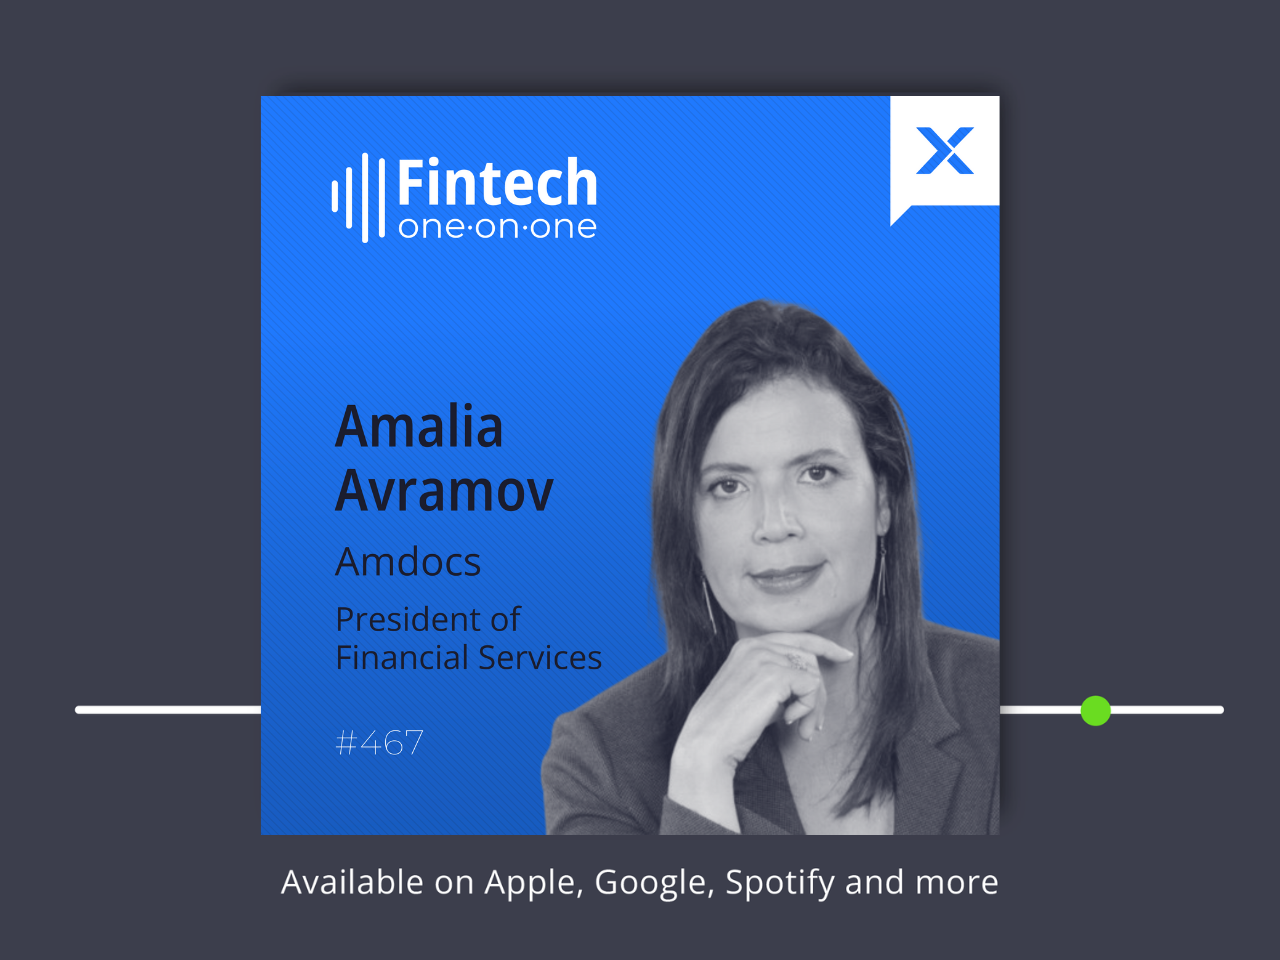 Amalia Avramov, presidente dei servizi finanziari, Amdocs